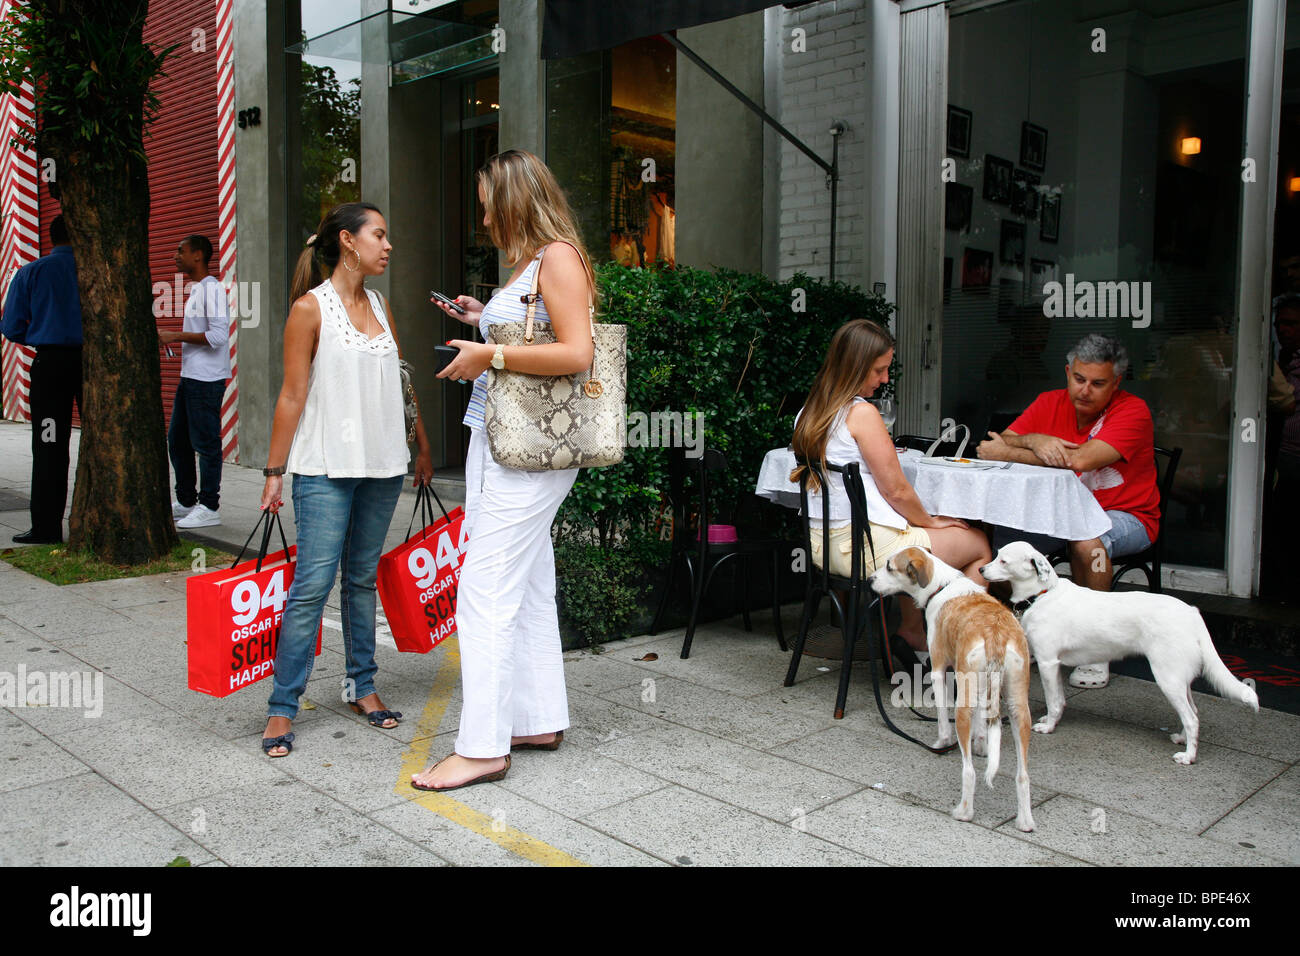 Les gens assis à Qauttrino restaurant sur la Rua Oscar Freire Street dans la zone de Jardins, Sao Paulo, Brésil. Banque D'Images